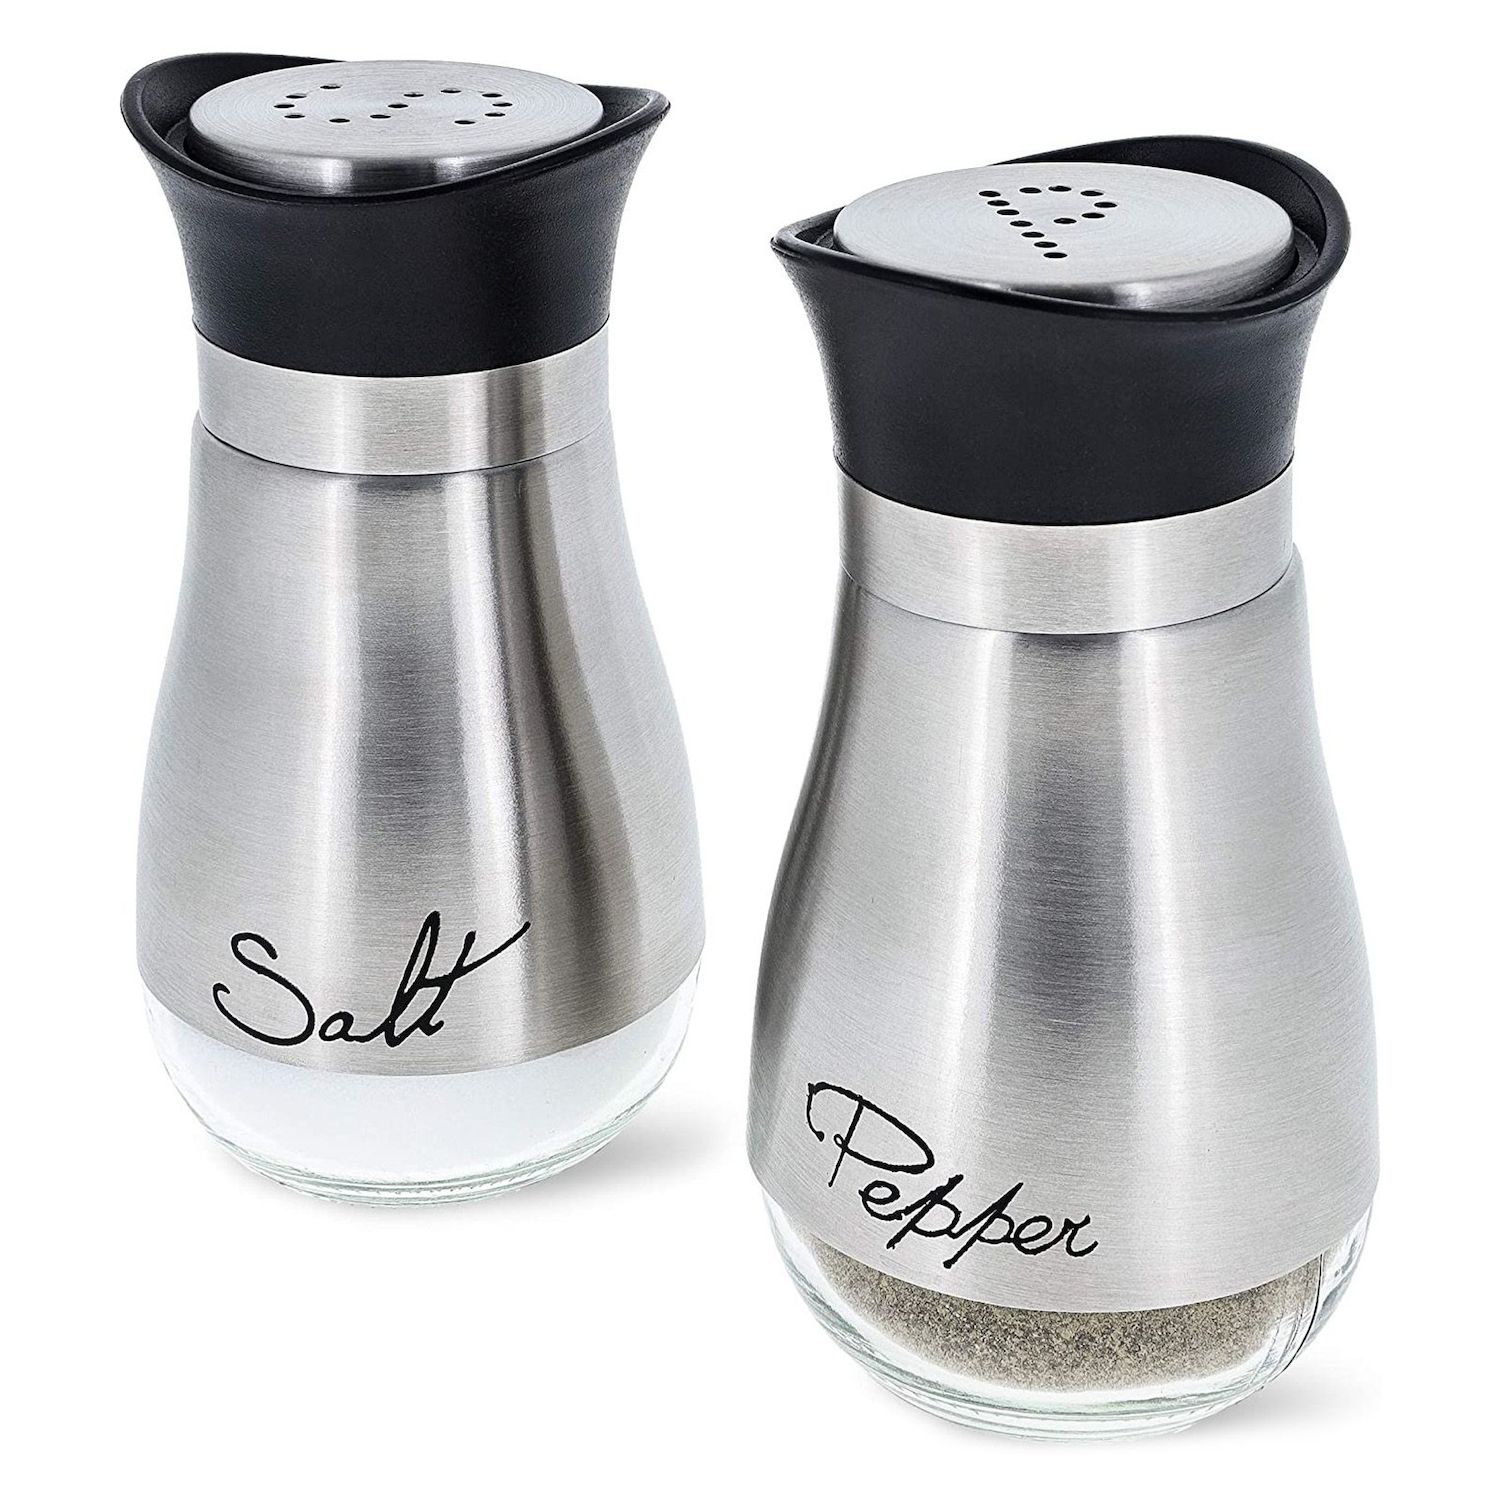 JoyJolt Revere Glass Salt and Pepper Shaker, 2 oz Set